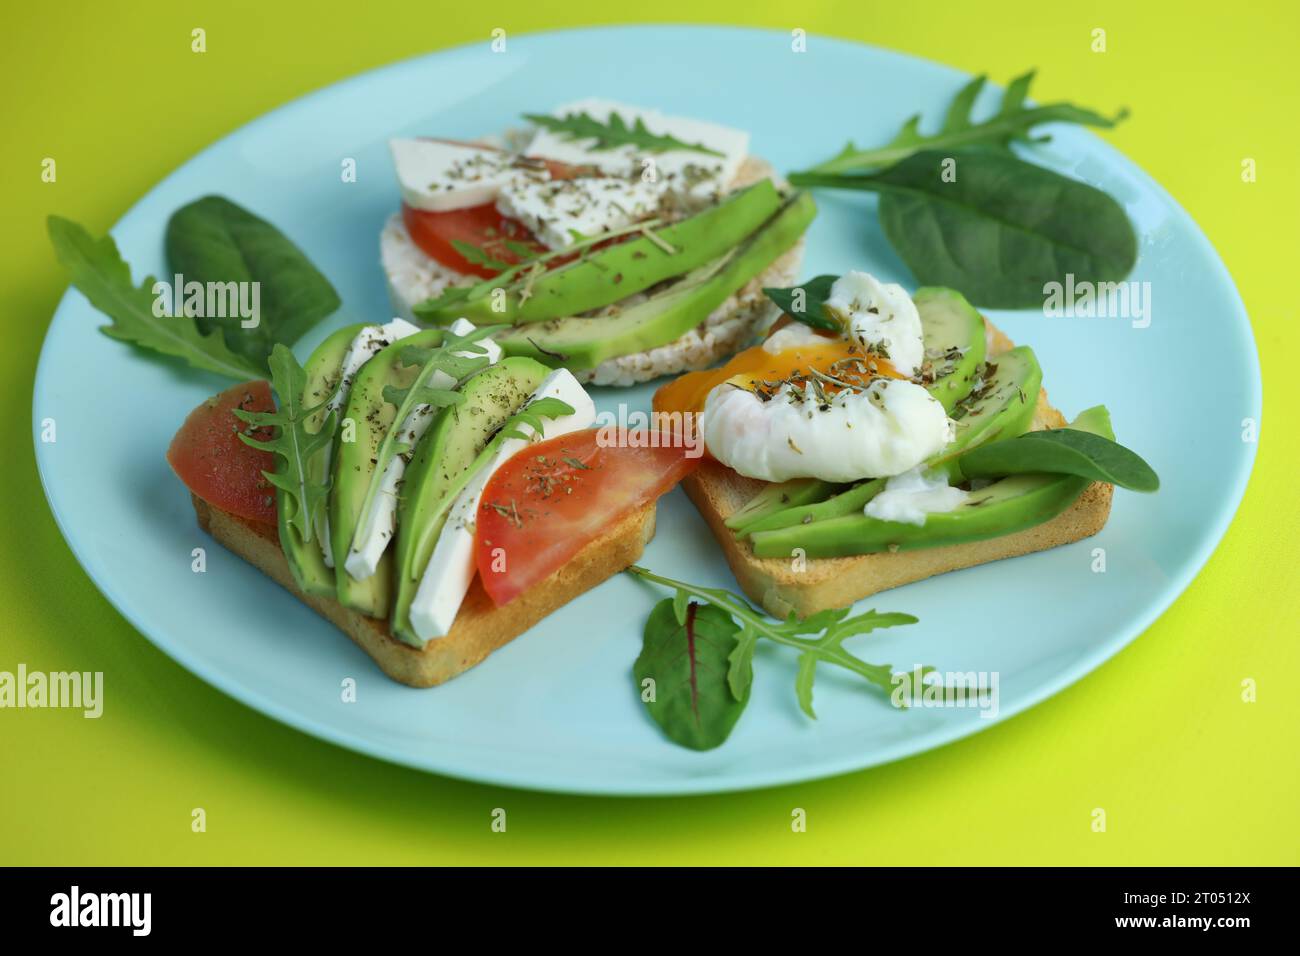 Toast dietetici con formaggio, insalata, avocado, pomodoro e uova. Cibo biologico sano Foto Stock